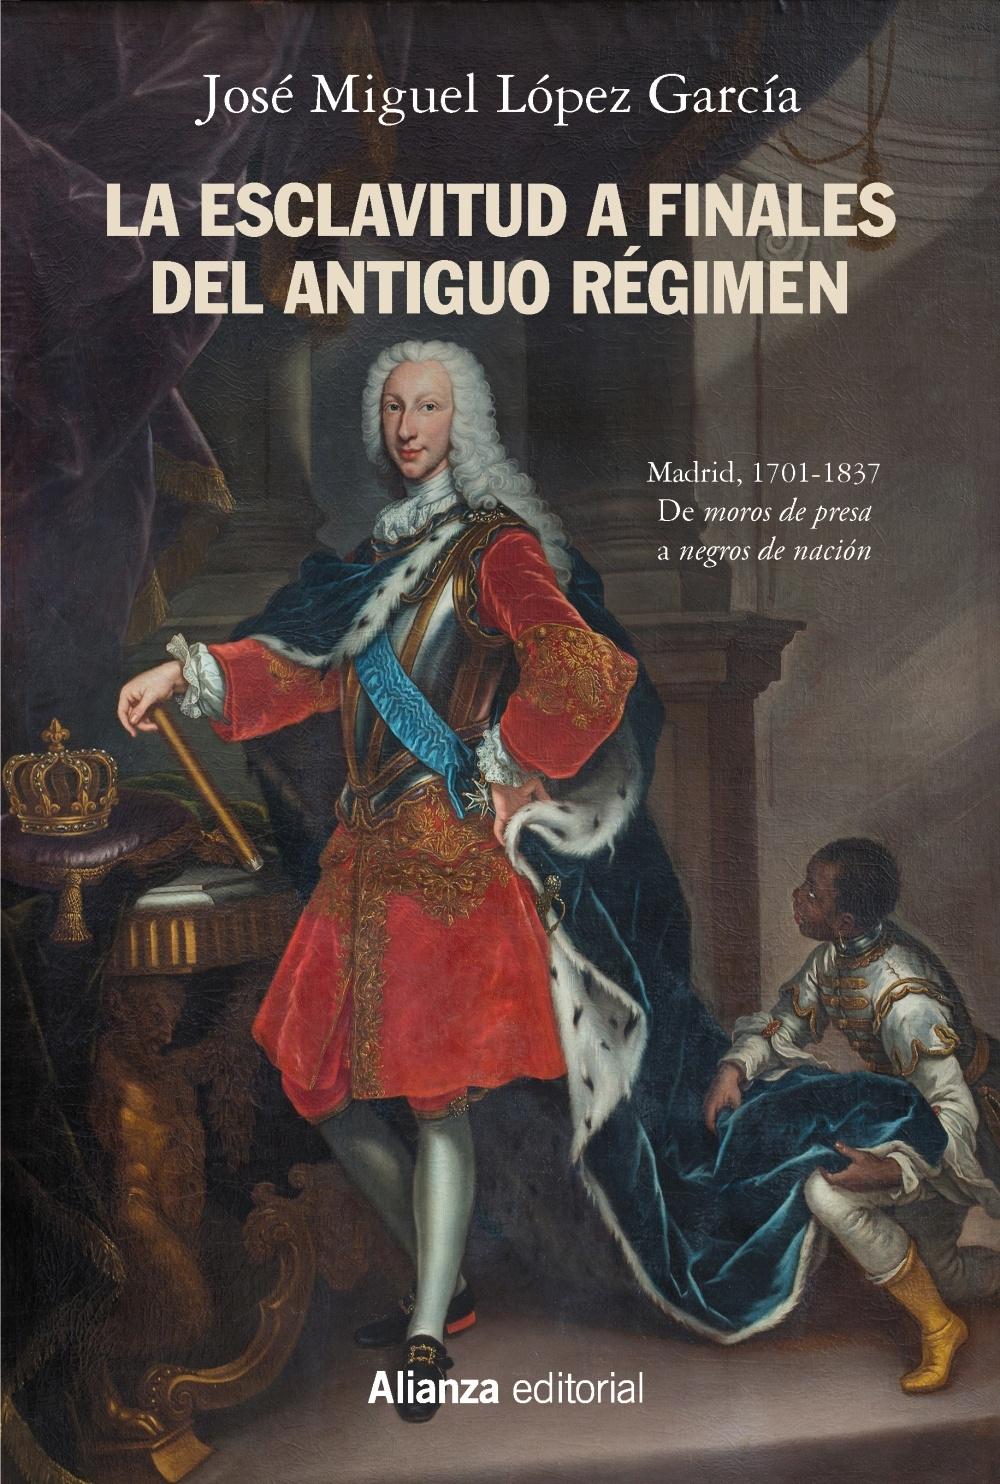 La esclavitud a finales del Antiguo Régimen "Madrid, 1701-1837, De 'moros de presa' a 'negros de nación'"